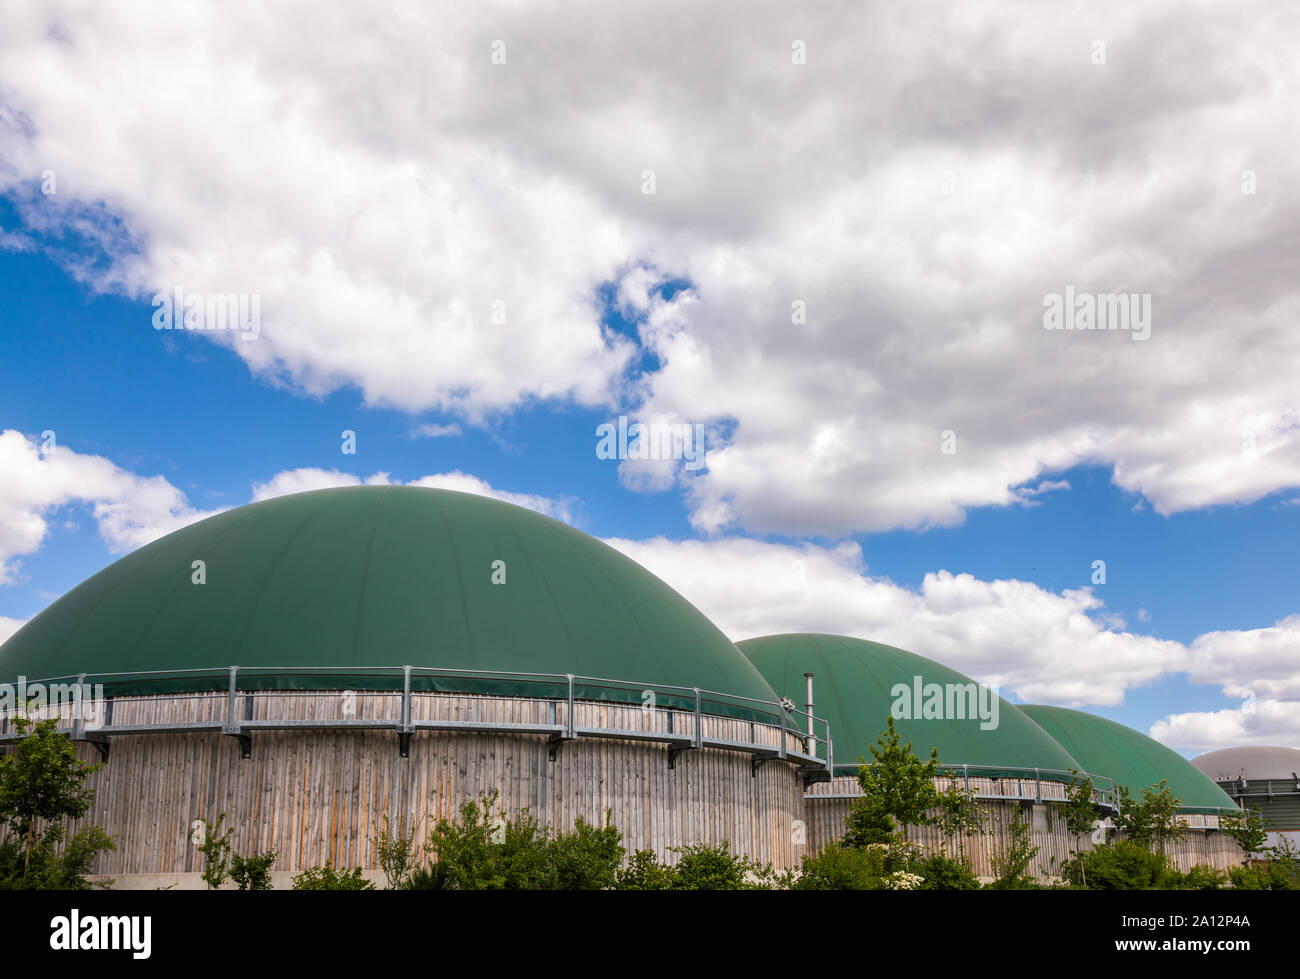 Digesteurs de biogaz ou de produire du biogaz à partir des déchets agricoles dans les régions rurales de l'Allemagne. Concept moderne de l'industrie des biocarburants Banque D'Images